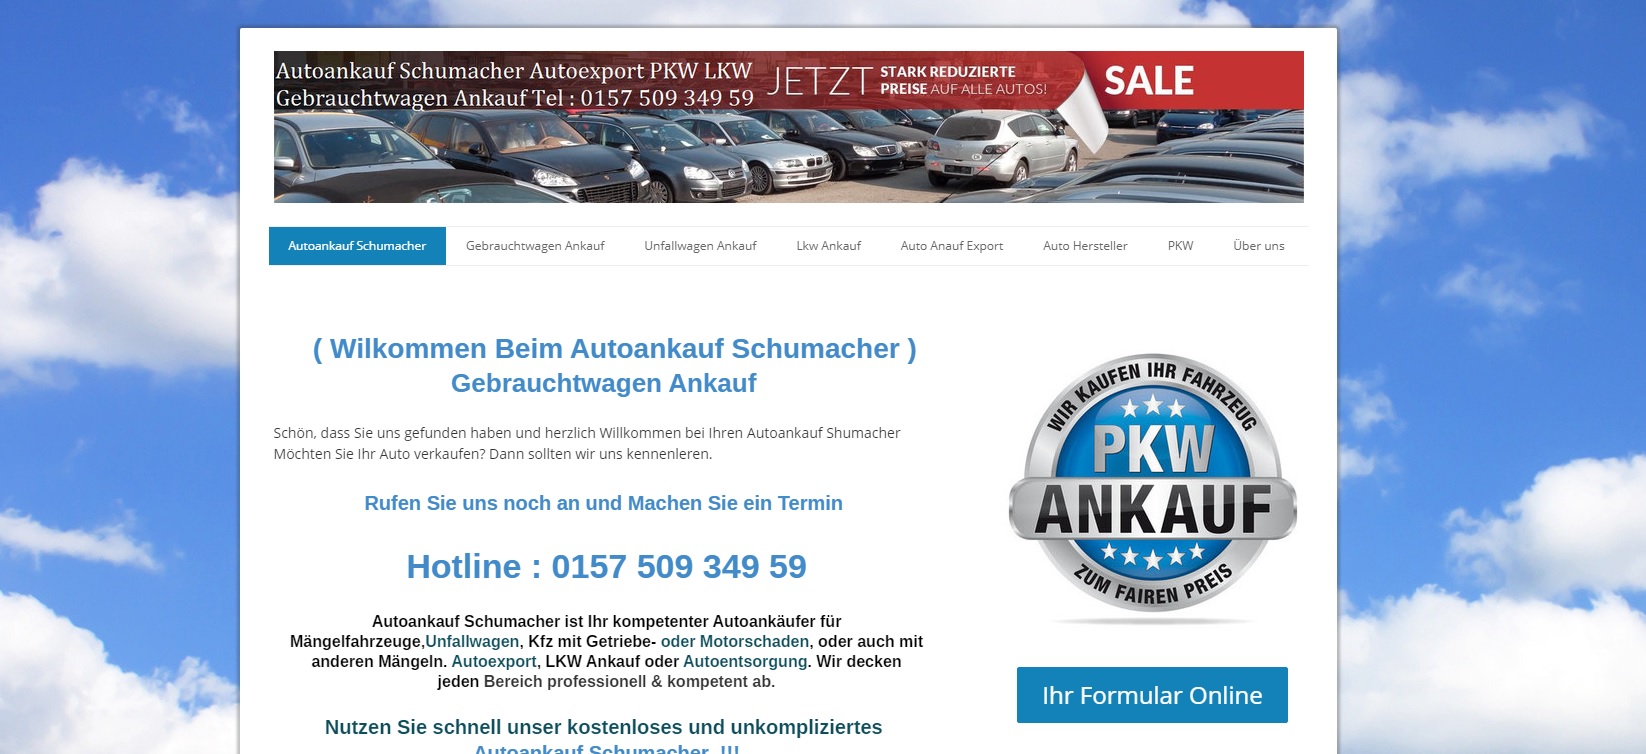 Autoankauf-Schumacher.de bietet bundesweiten Abholservice für Gebrauchtwagen